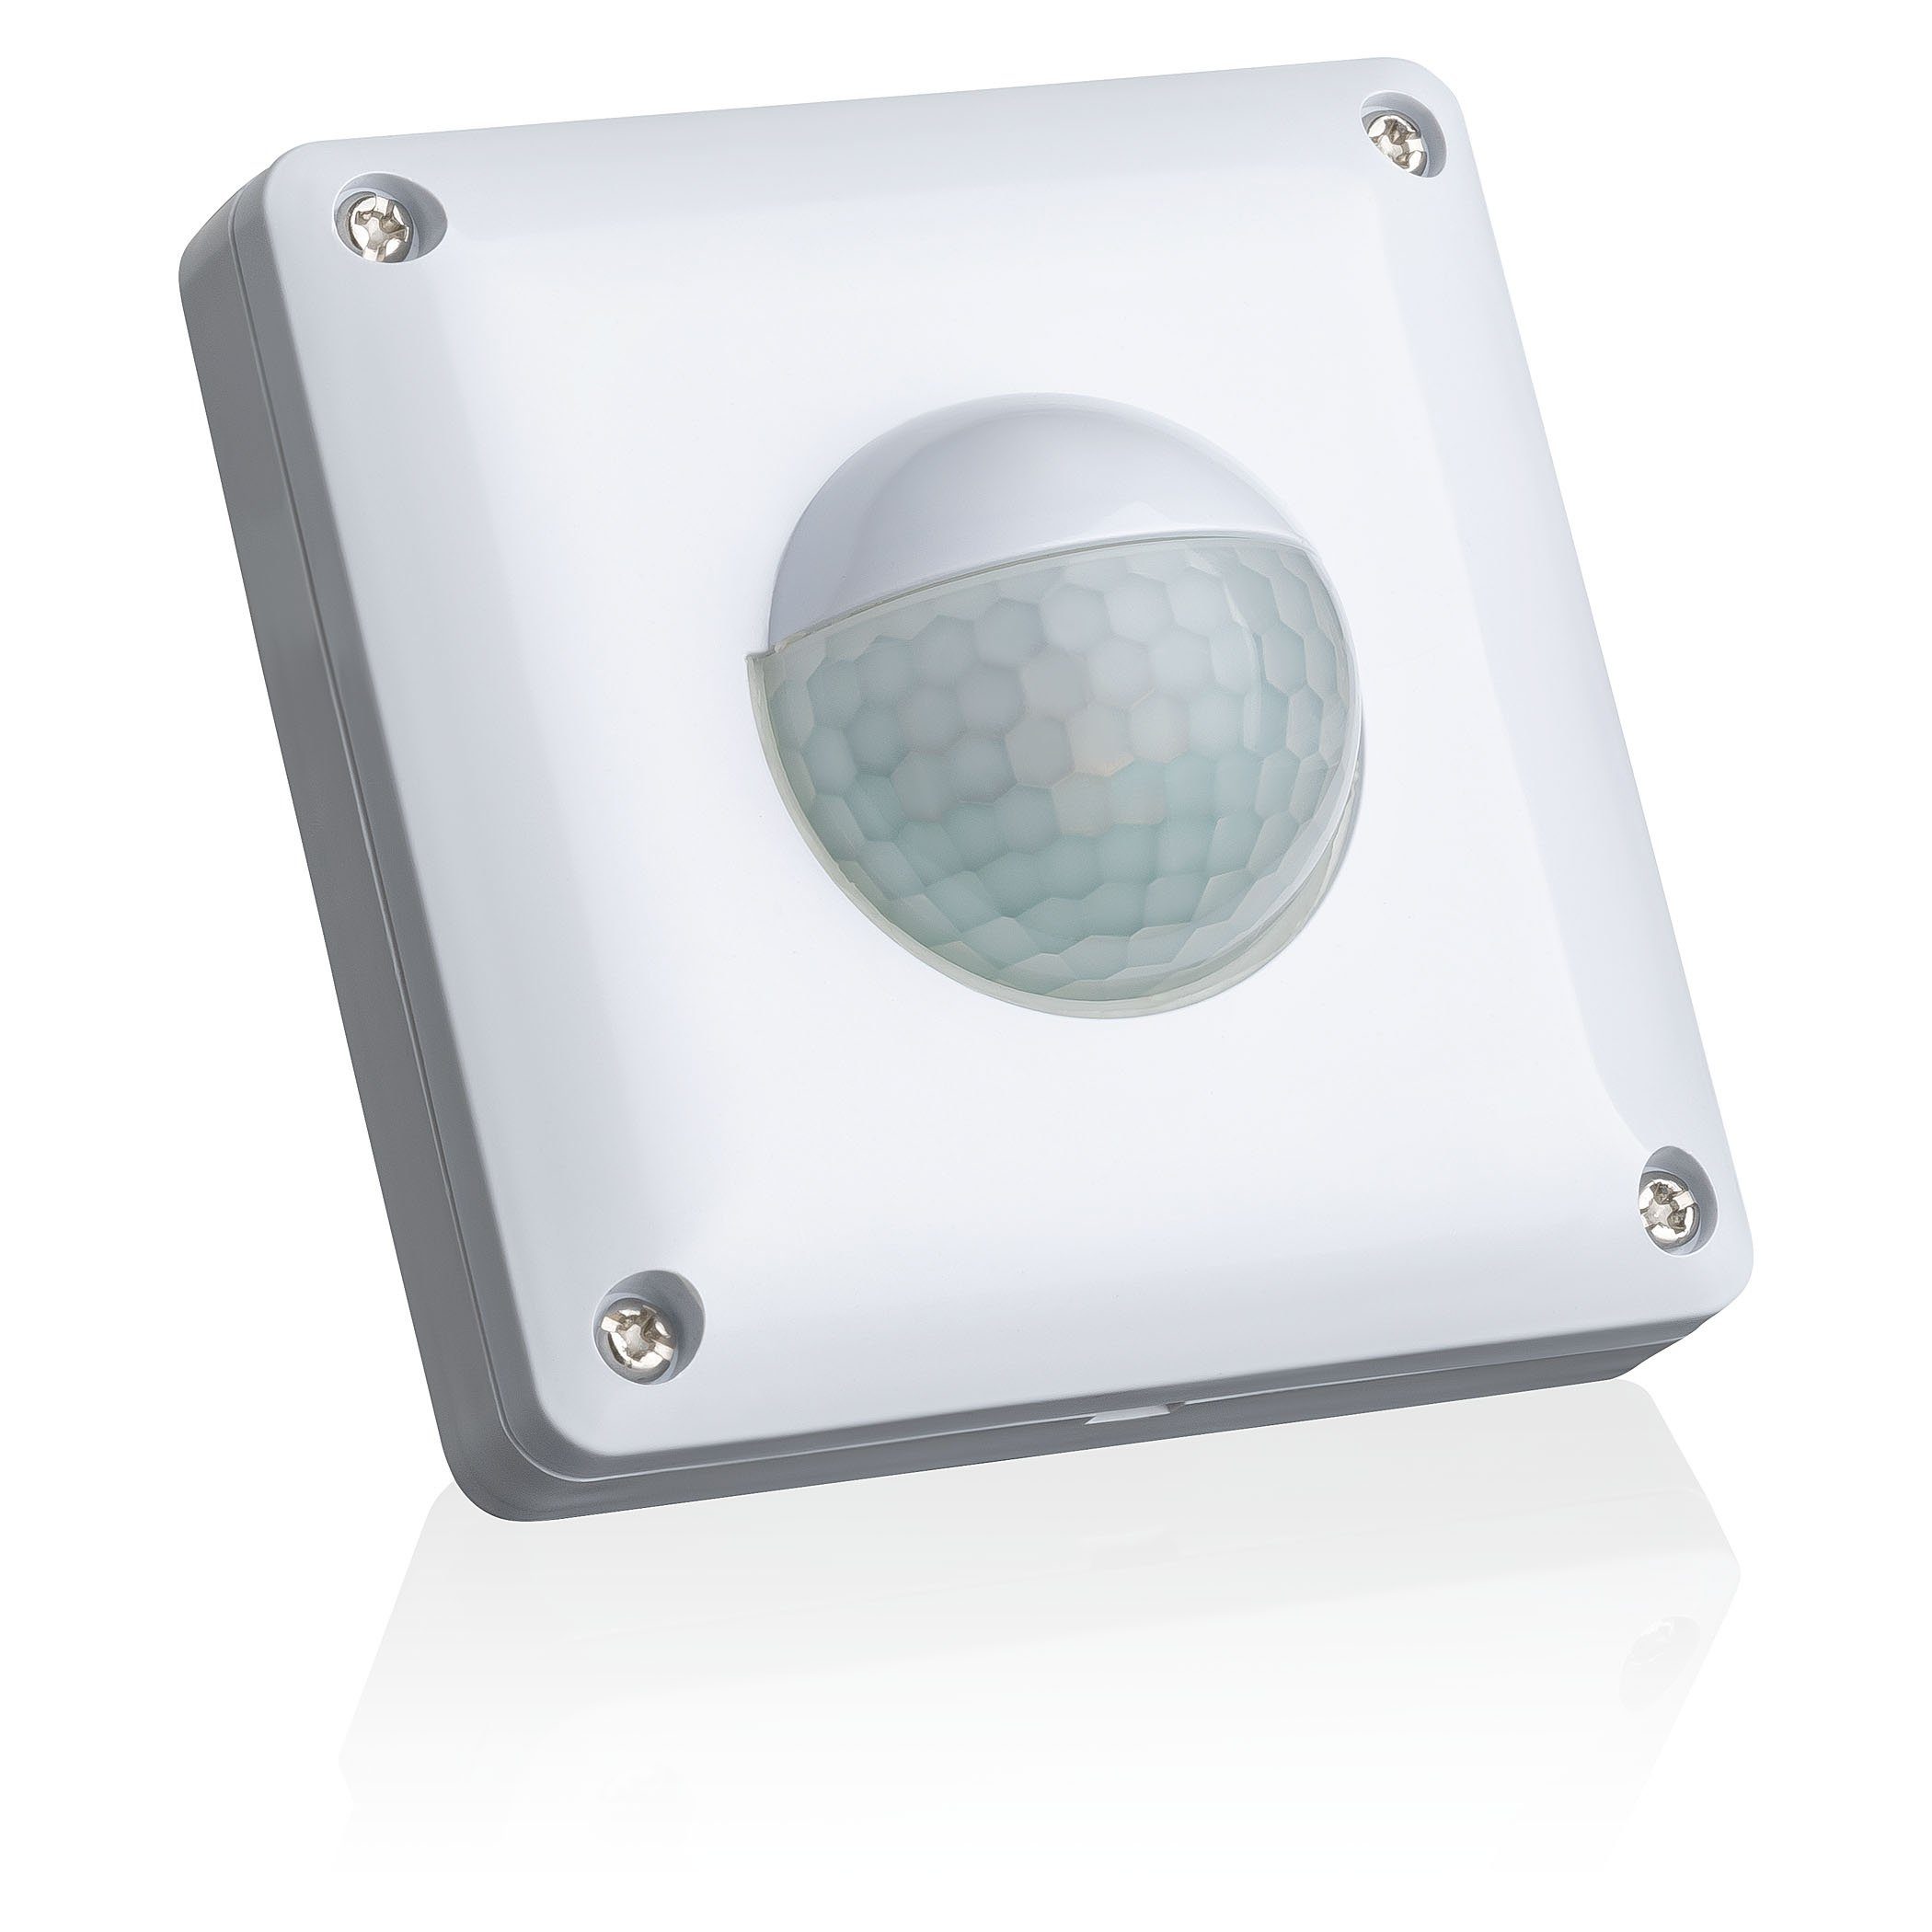 SEBSON Bewegungsmelder Bewegungsmelder Außen IP65 Unterputz LED geeignet programmierbar